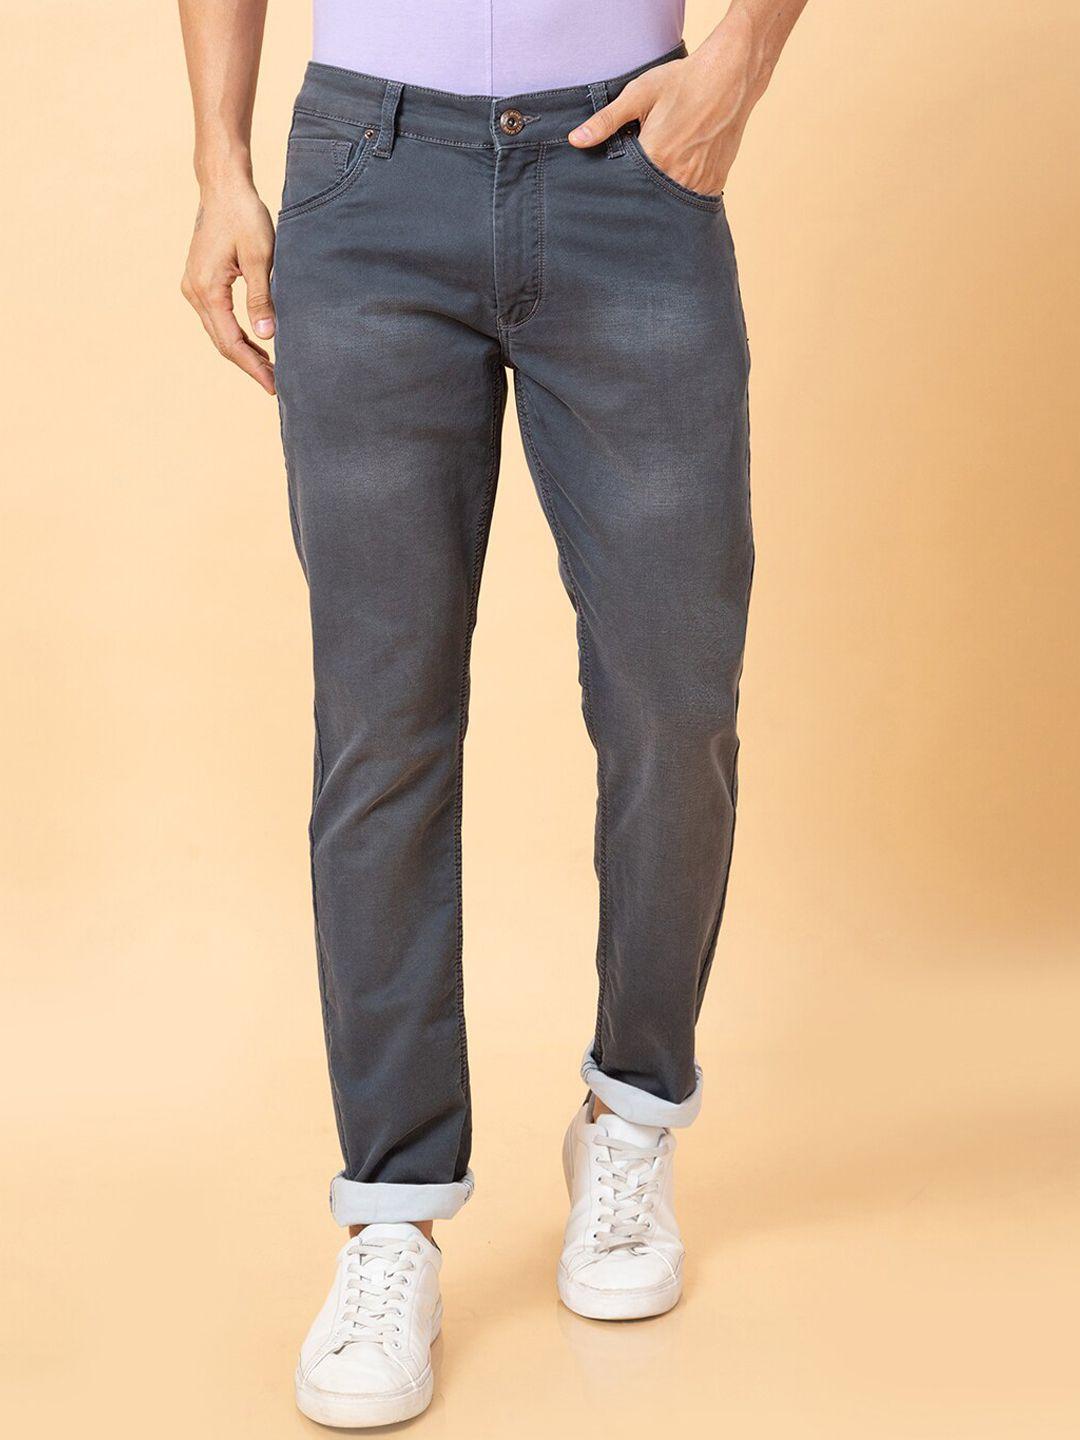 globus men grey clean look mid rise cotton jeans